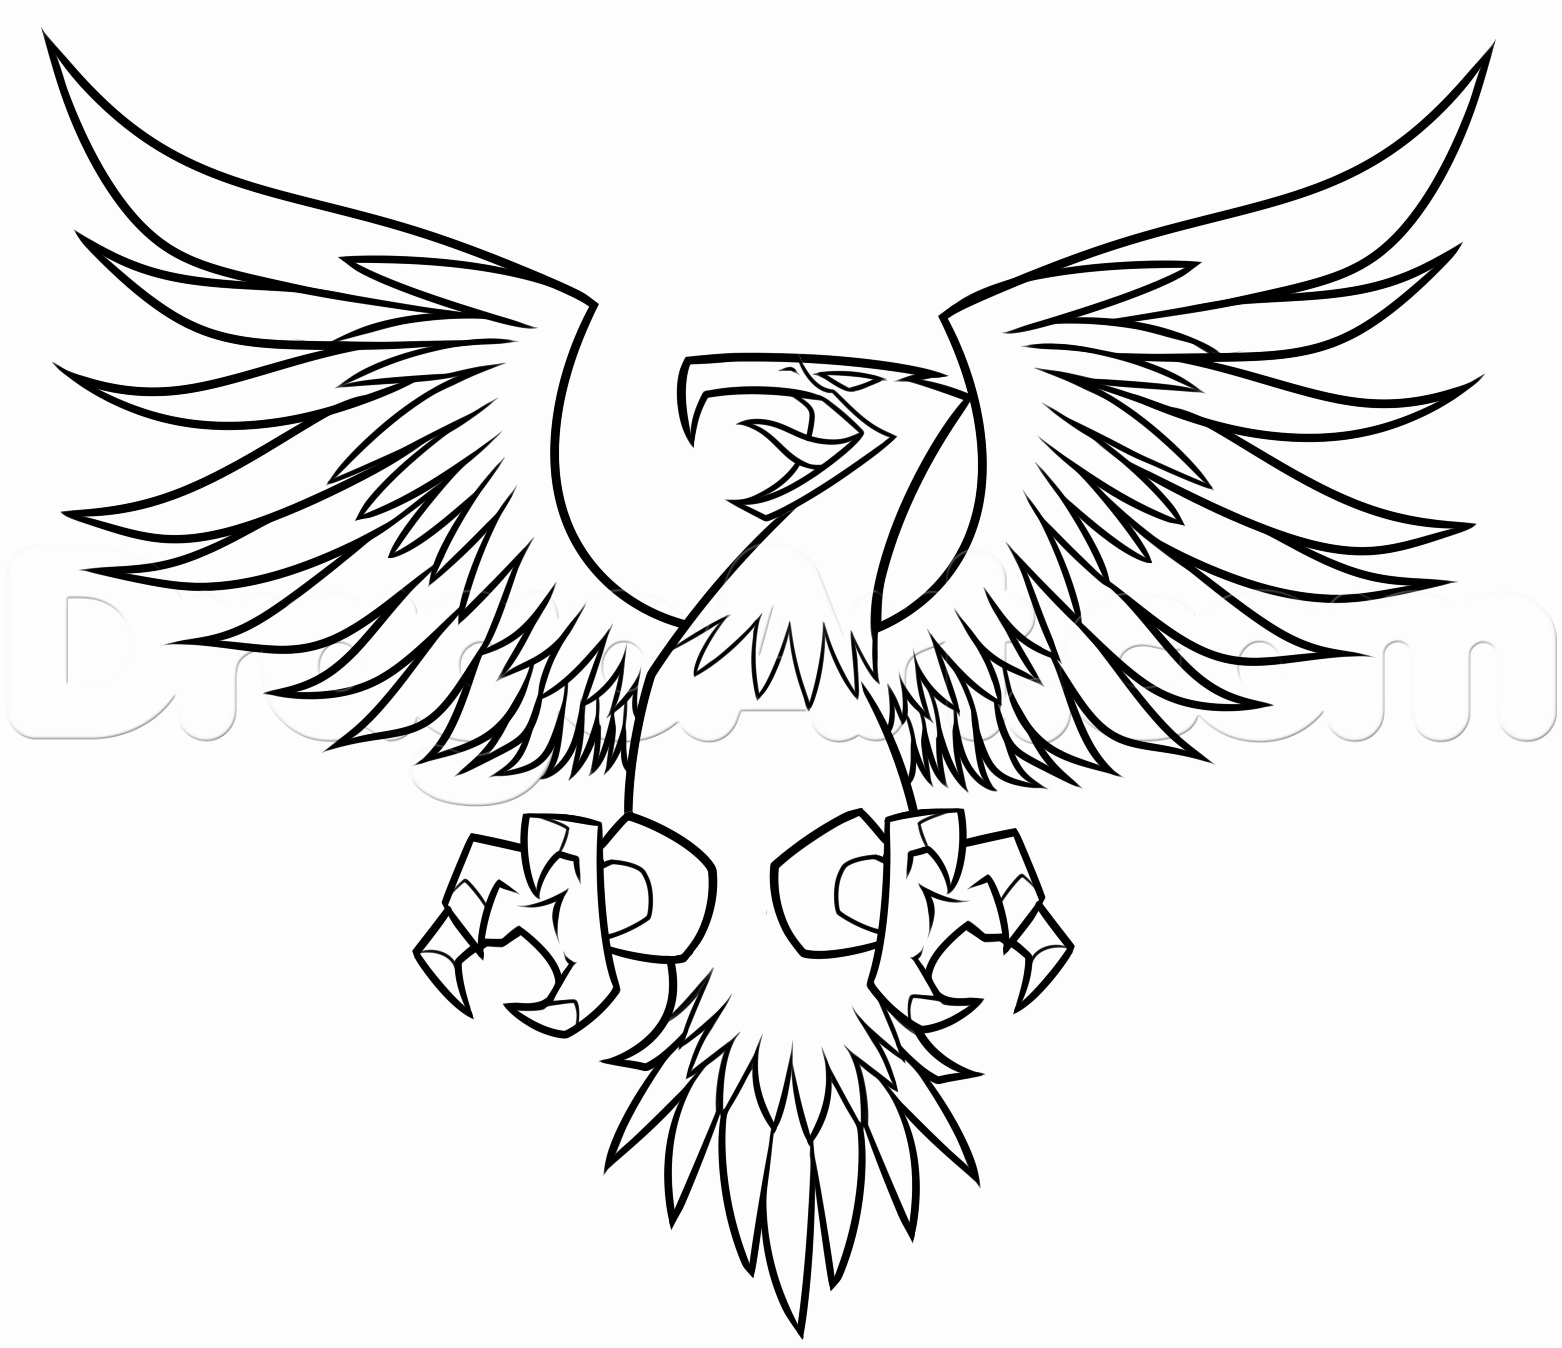 Герб Орел с расправленными крыльями